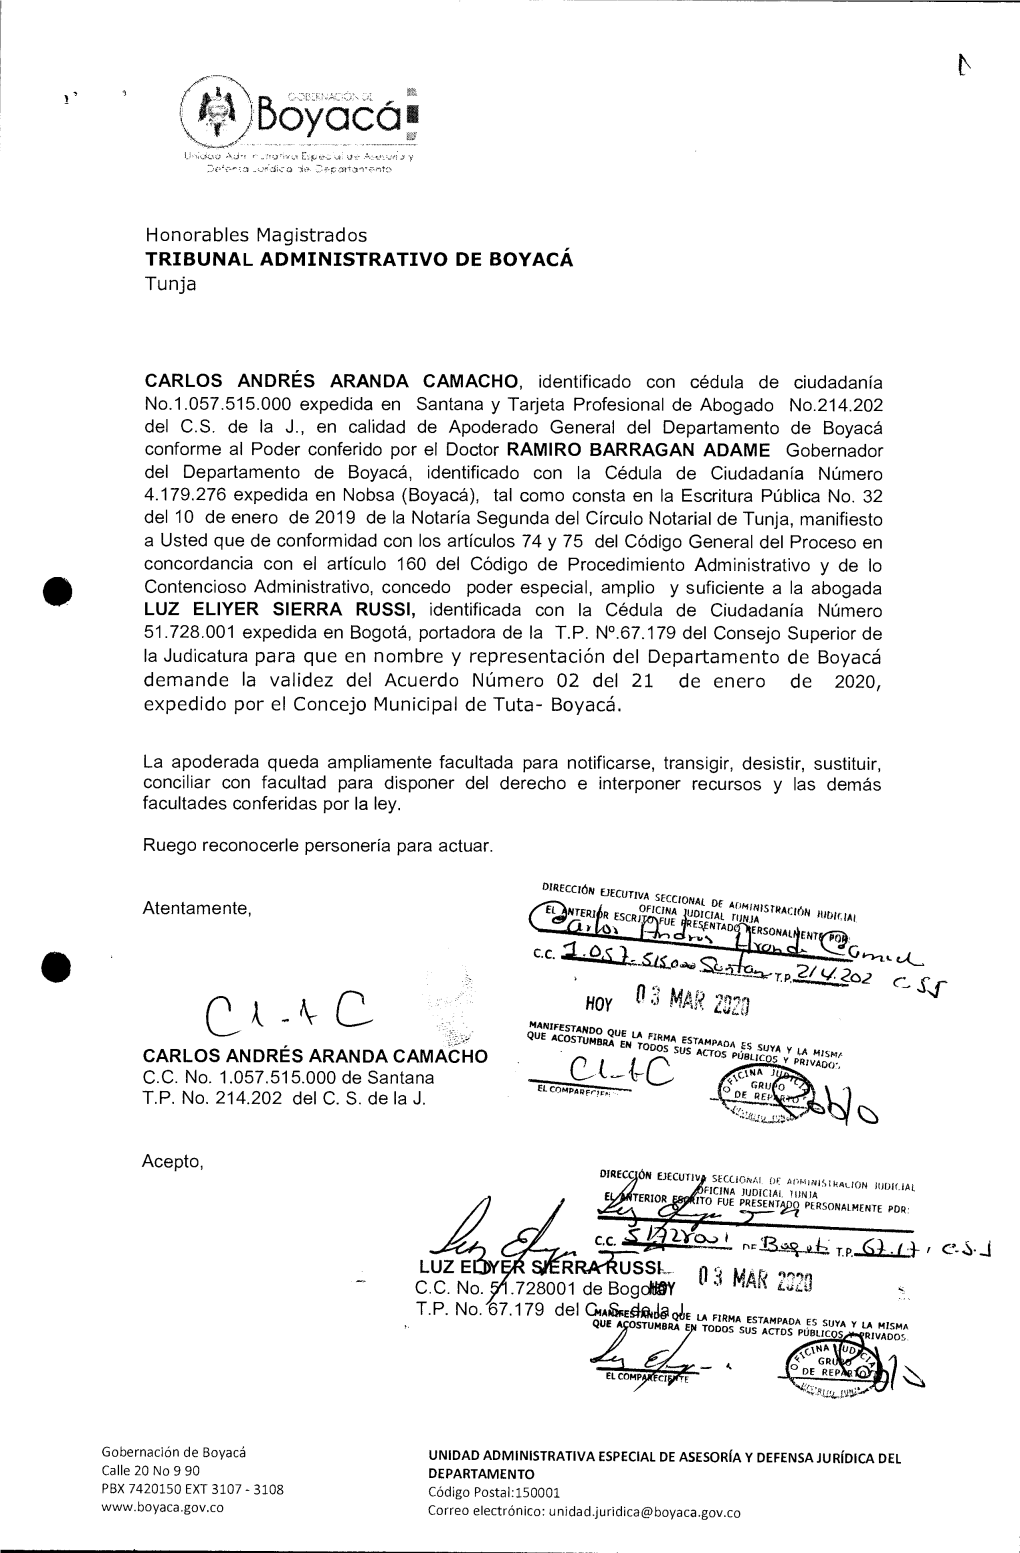 Demanda Contra La Validez Del Acuerdo Número 02 Del 21 De Enero De 2020, Expedido Por El Honorable Concejo Municipal De Tuta, Boyacá